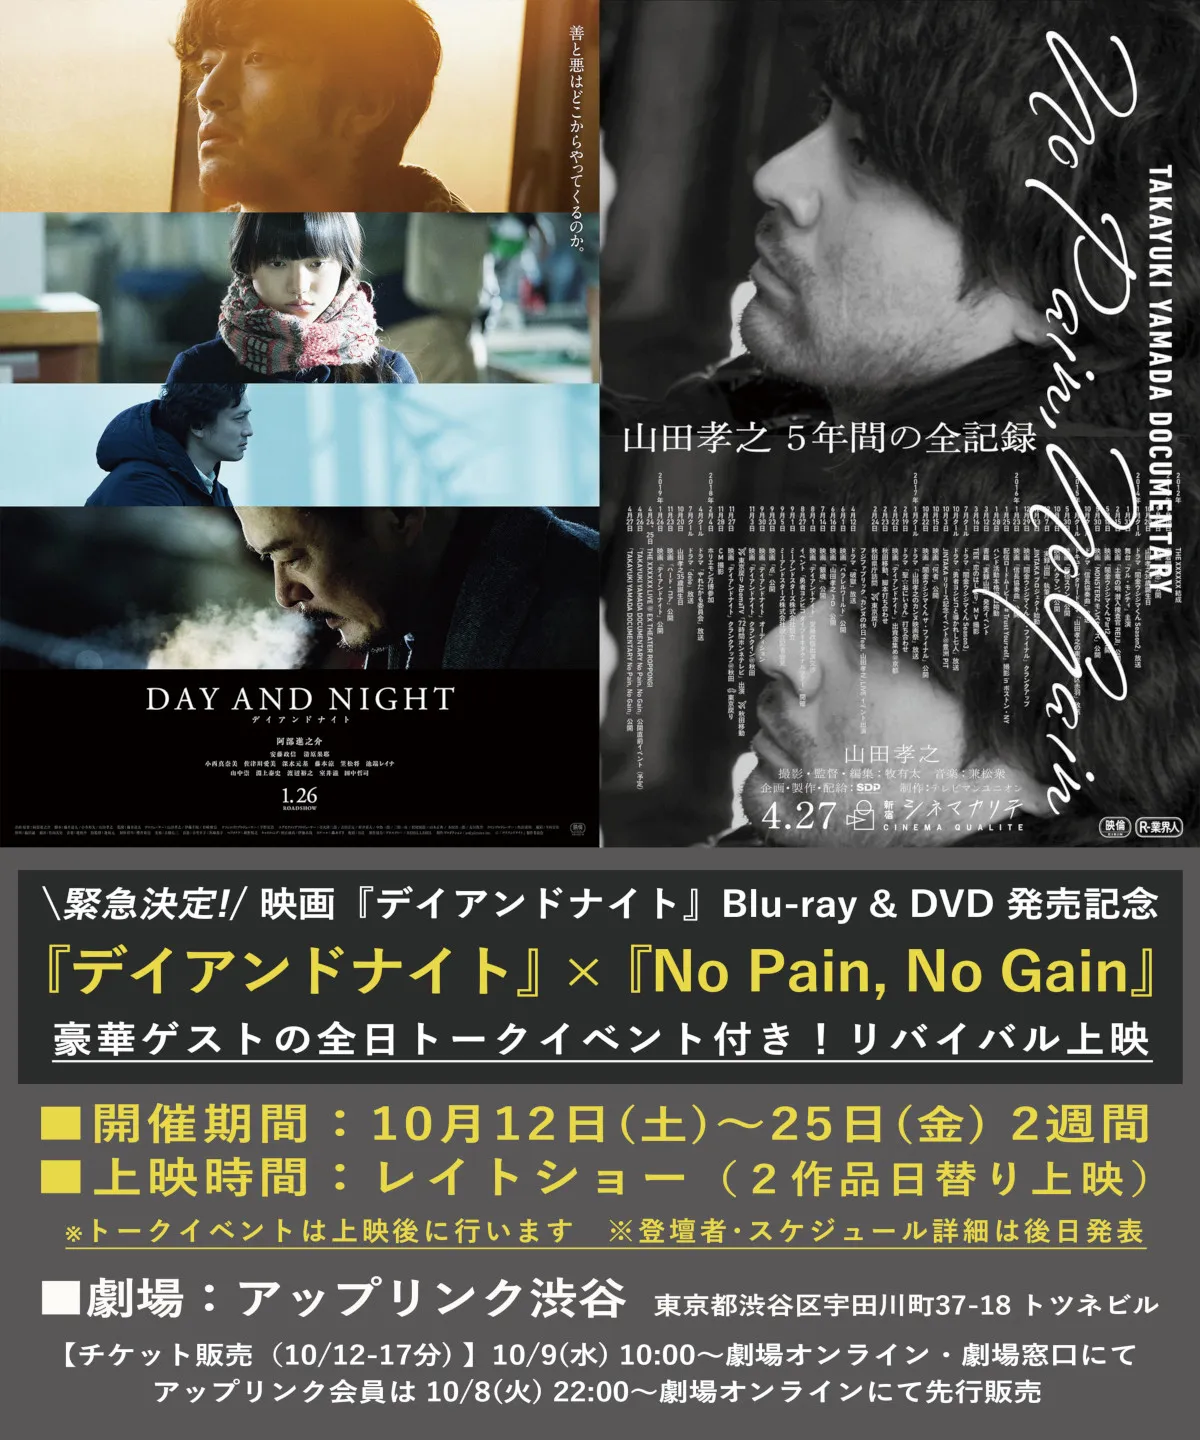 映画「デイアンドナイト」「TAKAYUKI YAMADA DOCUMENTARY『NoPain,NoGain』」のリバイバル上映が決定